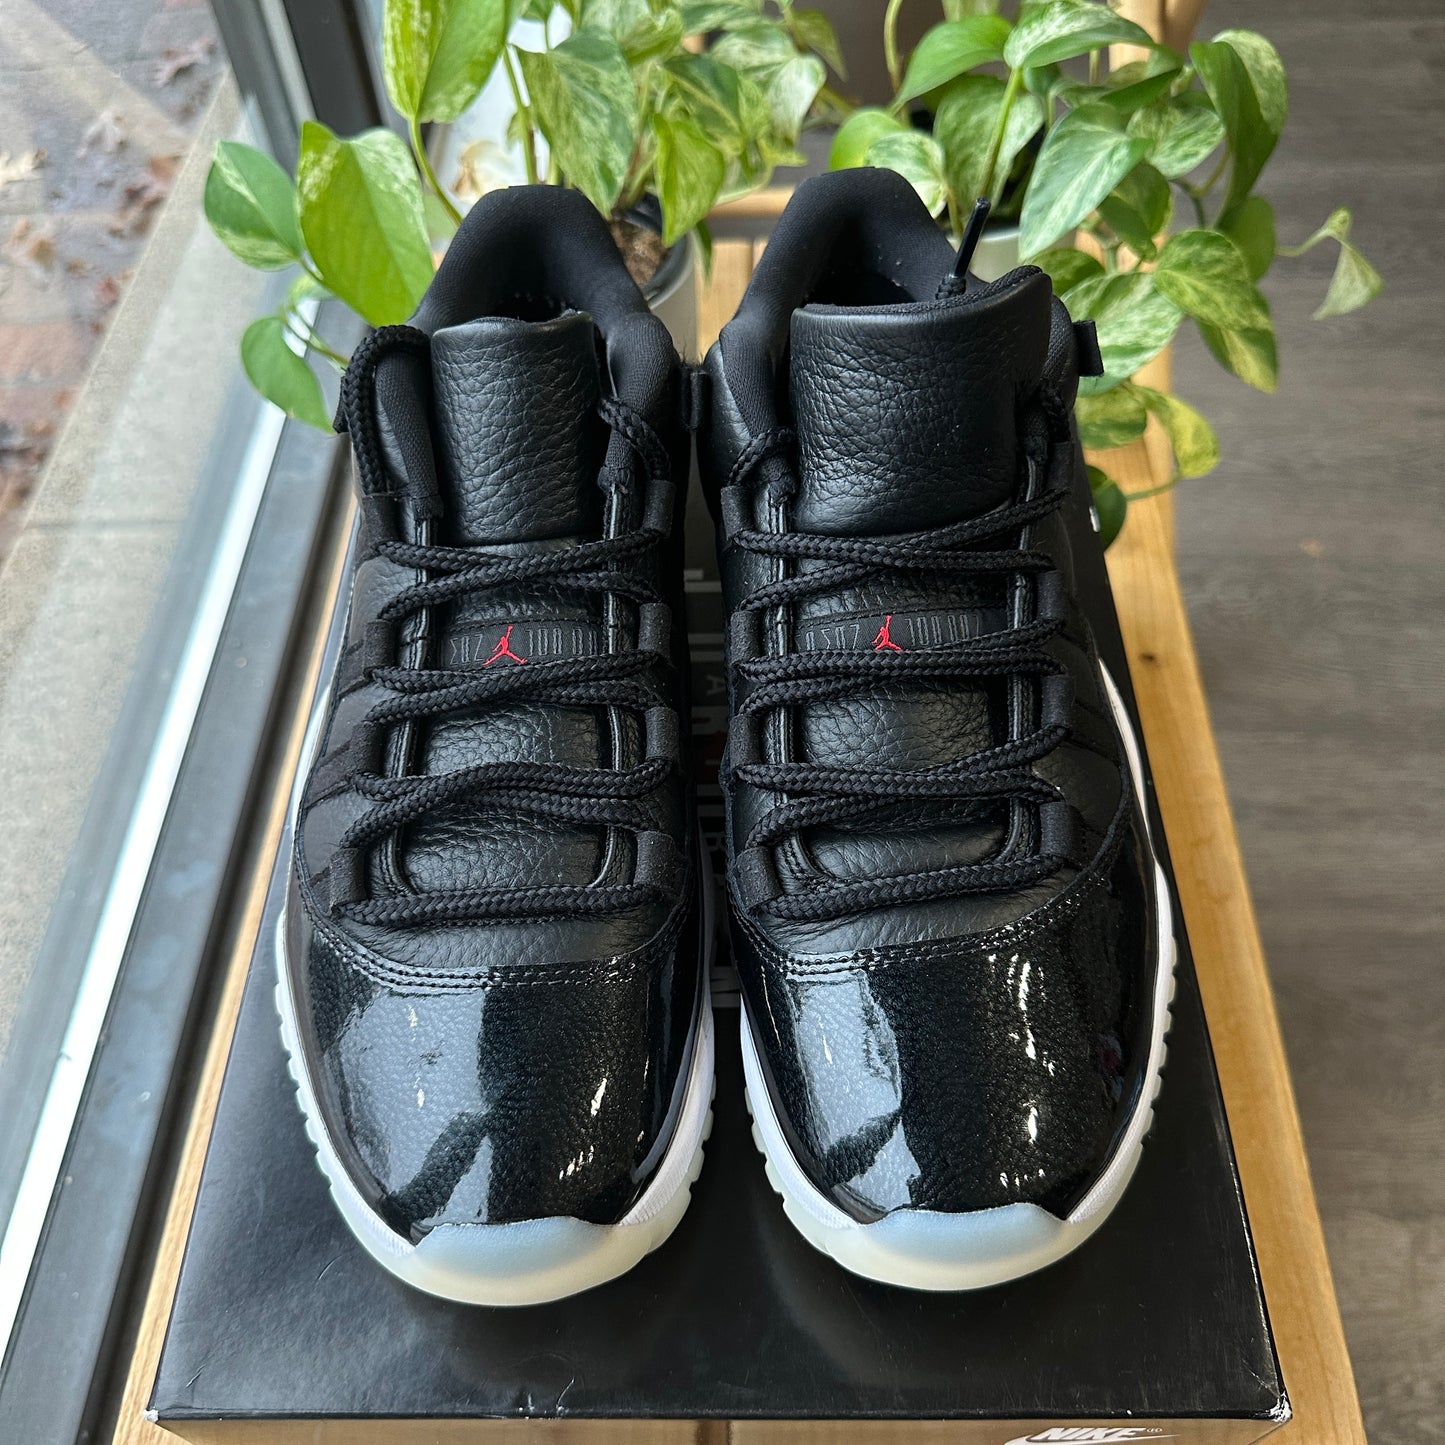 Air Jordan 11 Low "72-10" Size 9.5